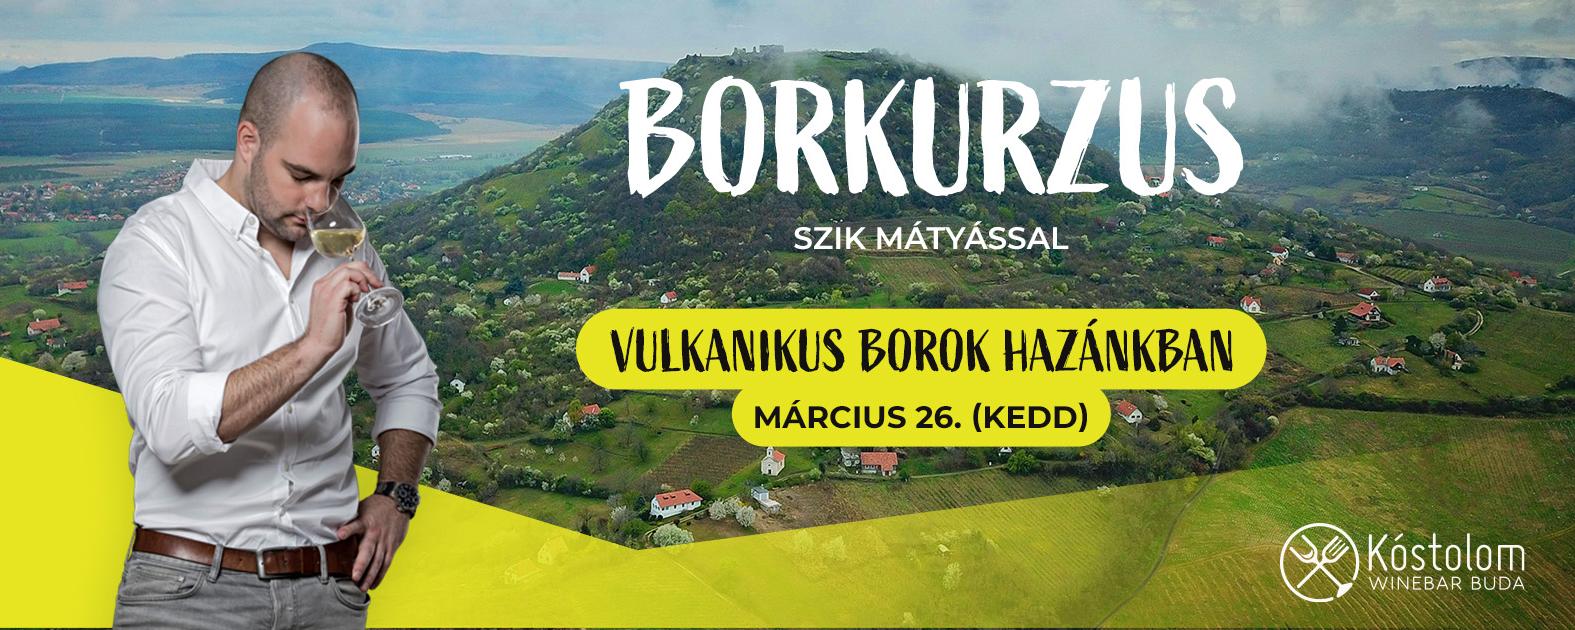 Vulkanikus borok hazánkban - Badacsony mikrorégiói: Csobánc, Tóti-hegy Szik Mátyással 